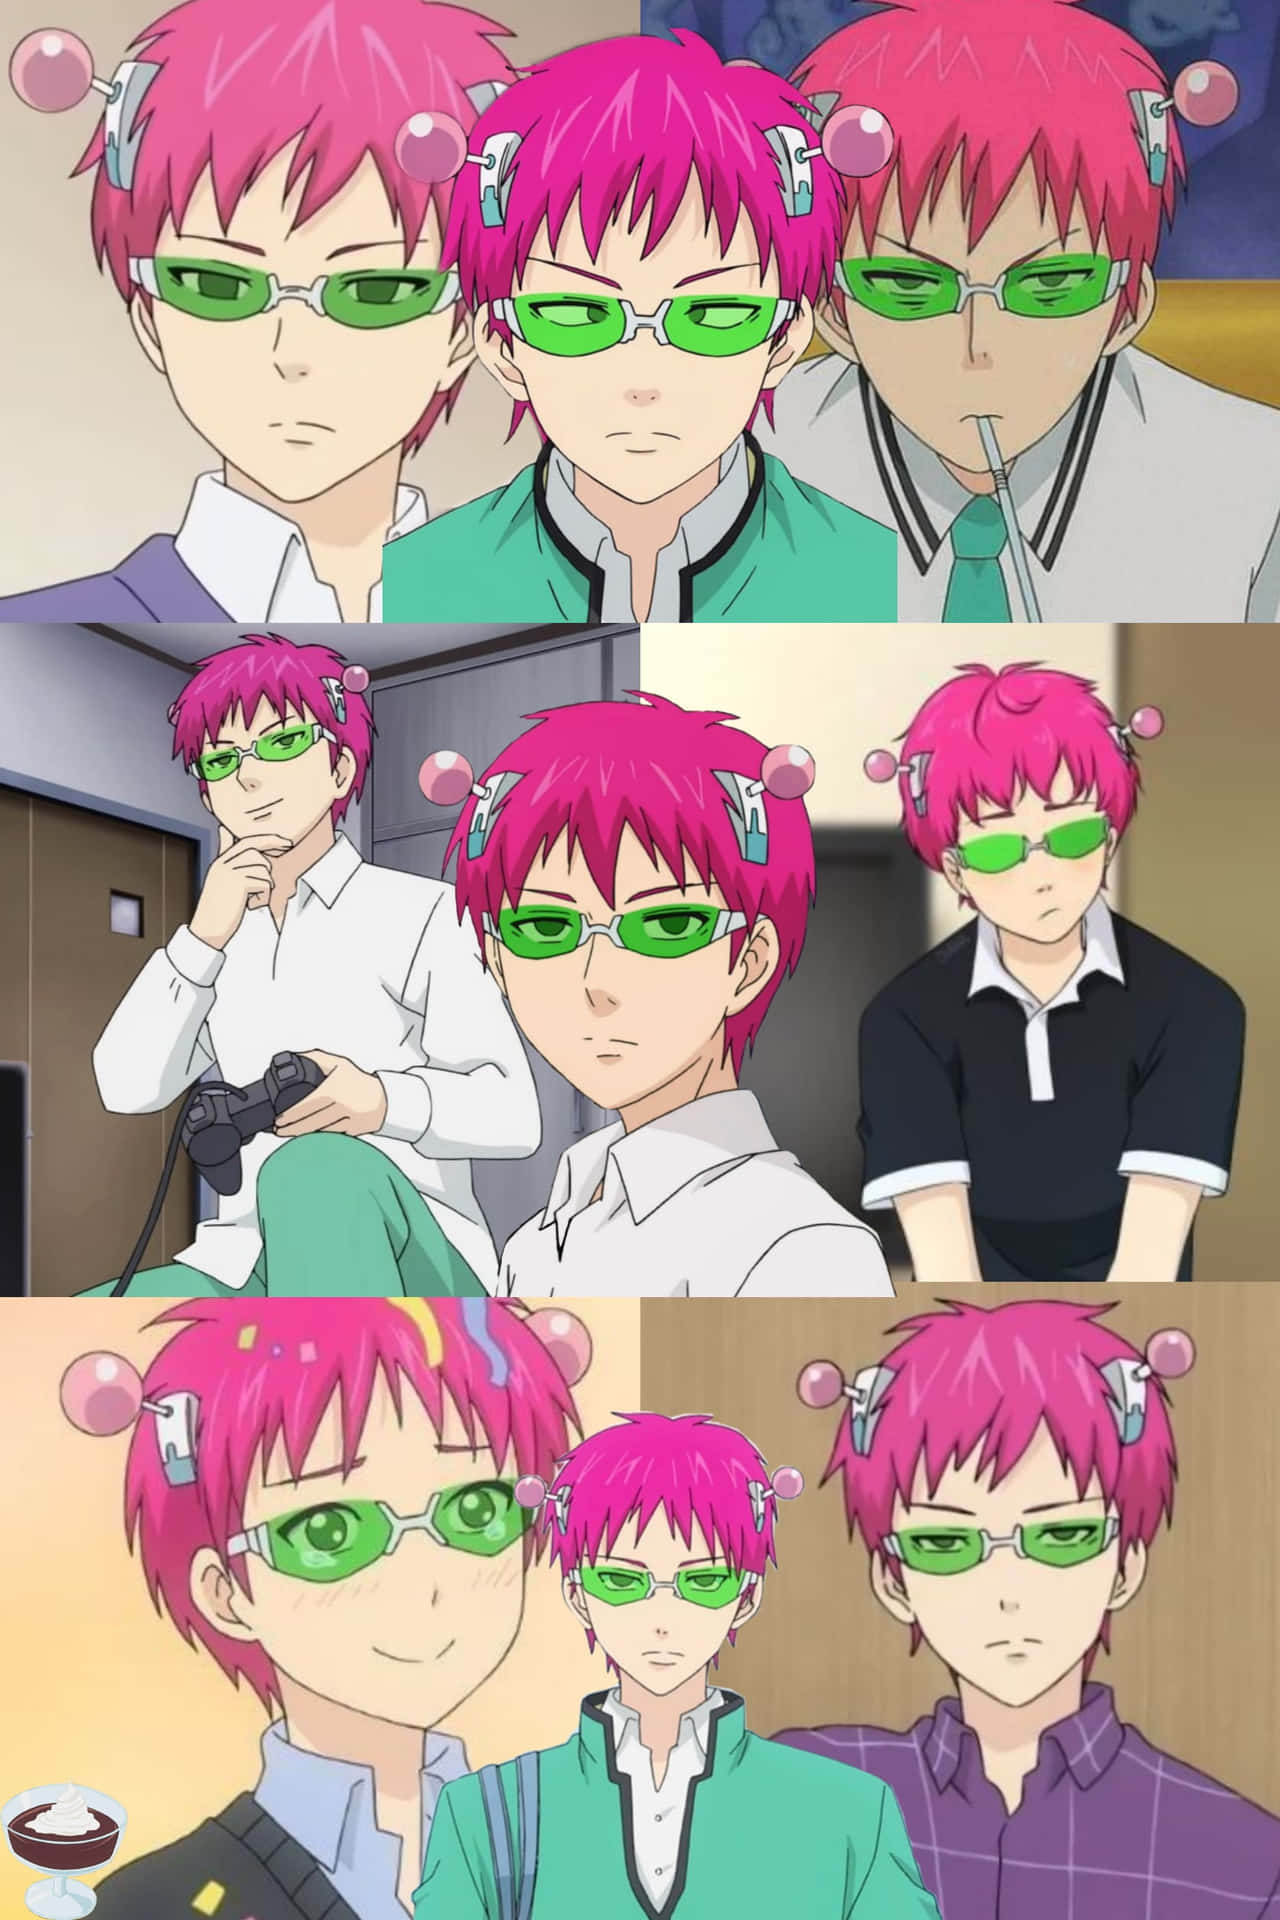 Einecollage Von Anime-charakteren Mit Pinken Haaren Und Grünen Brillen Wallpaper